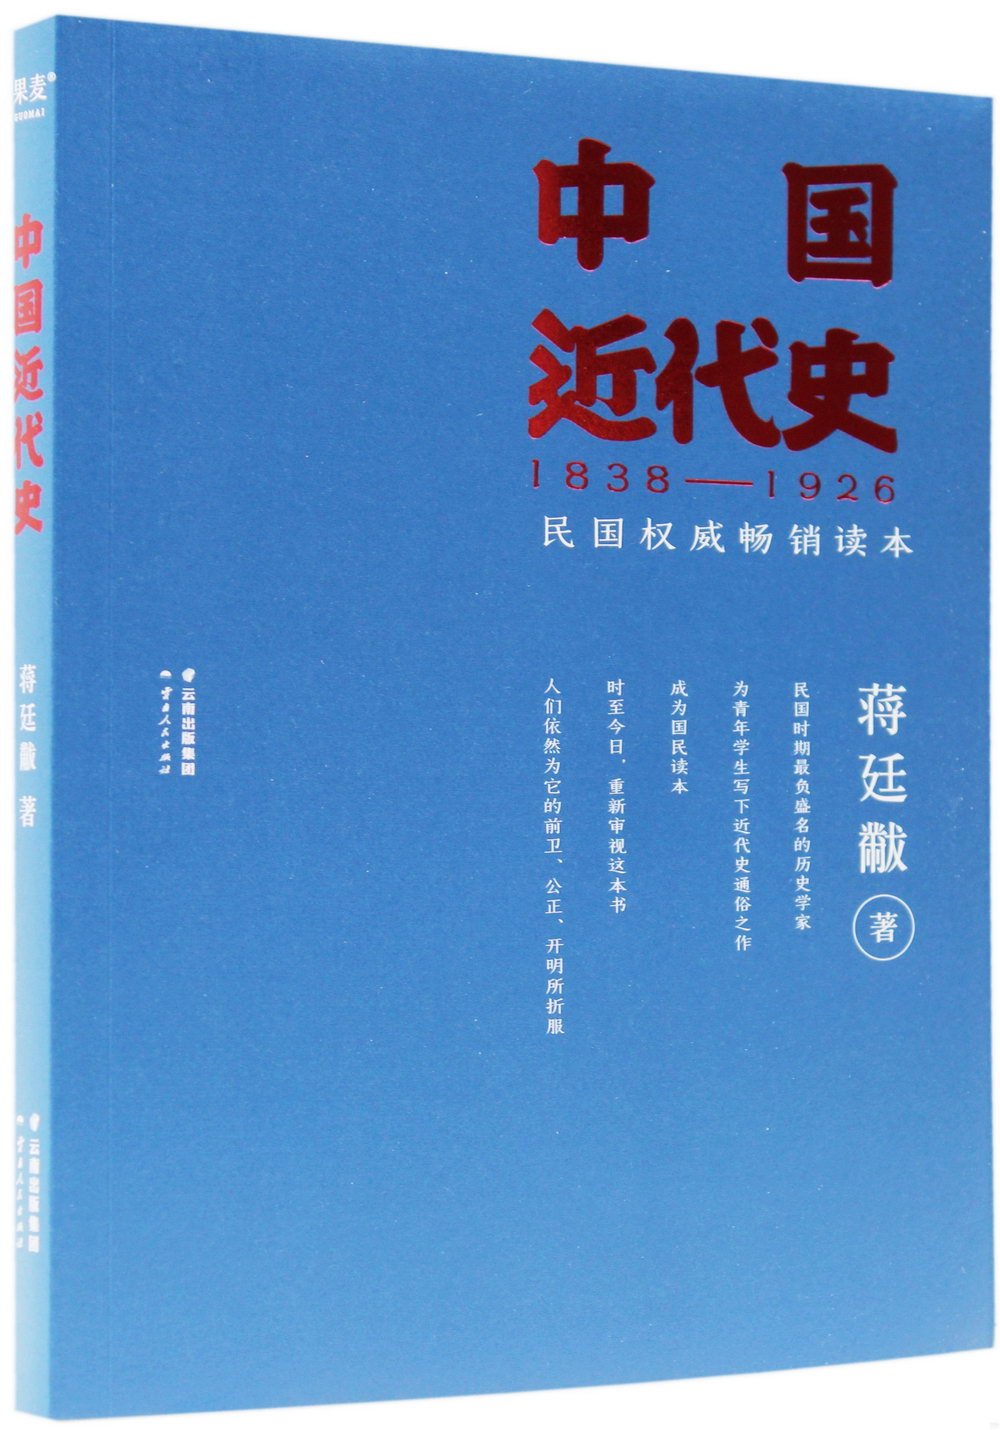 中國近代史(1838-1926)